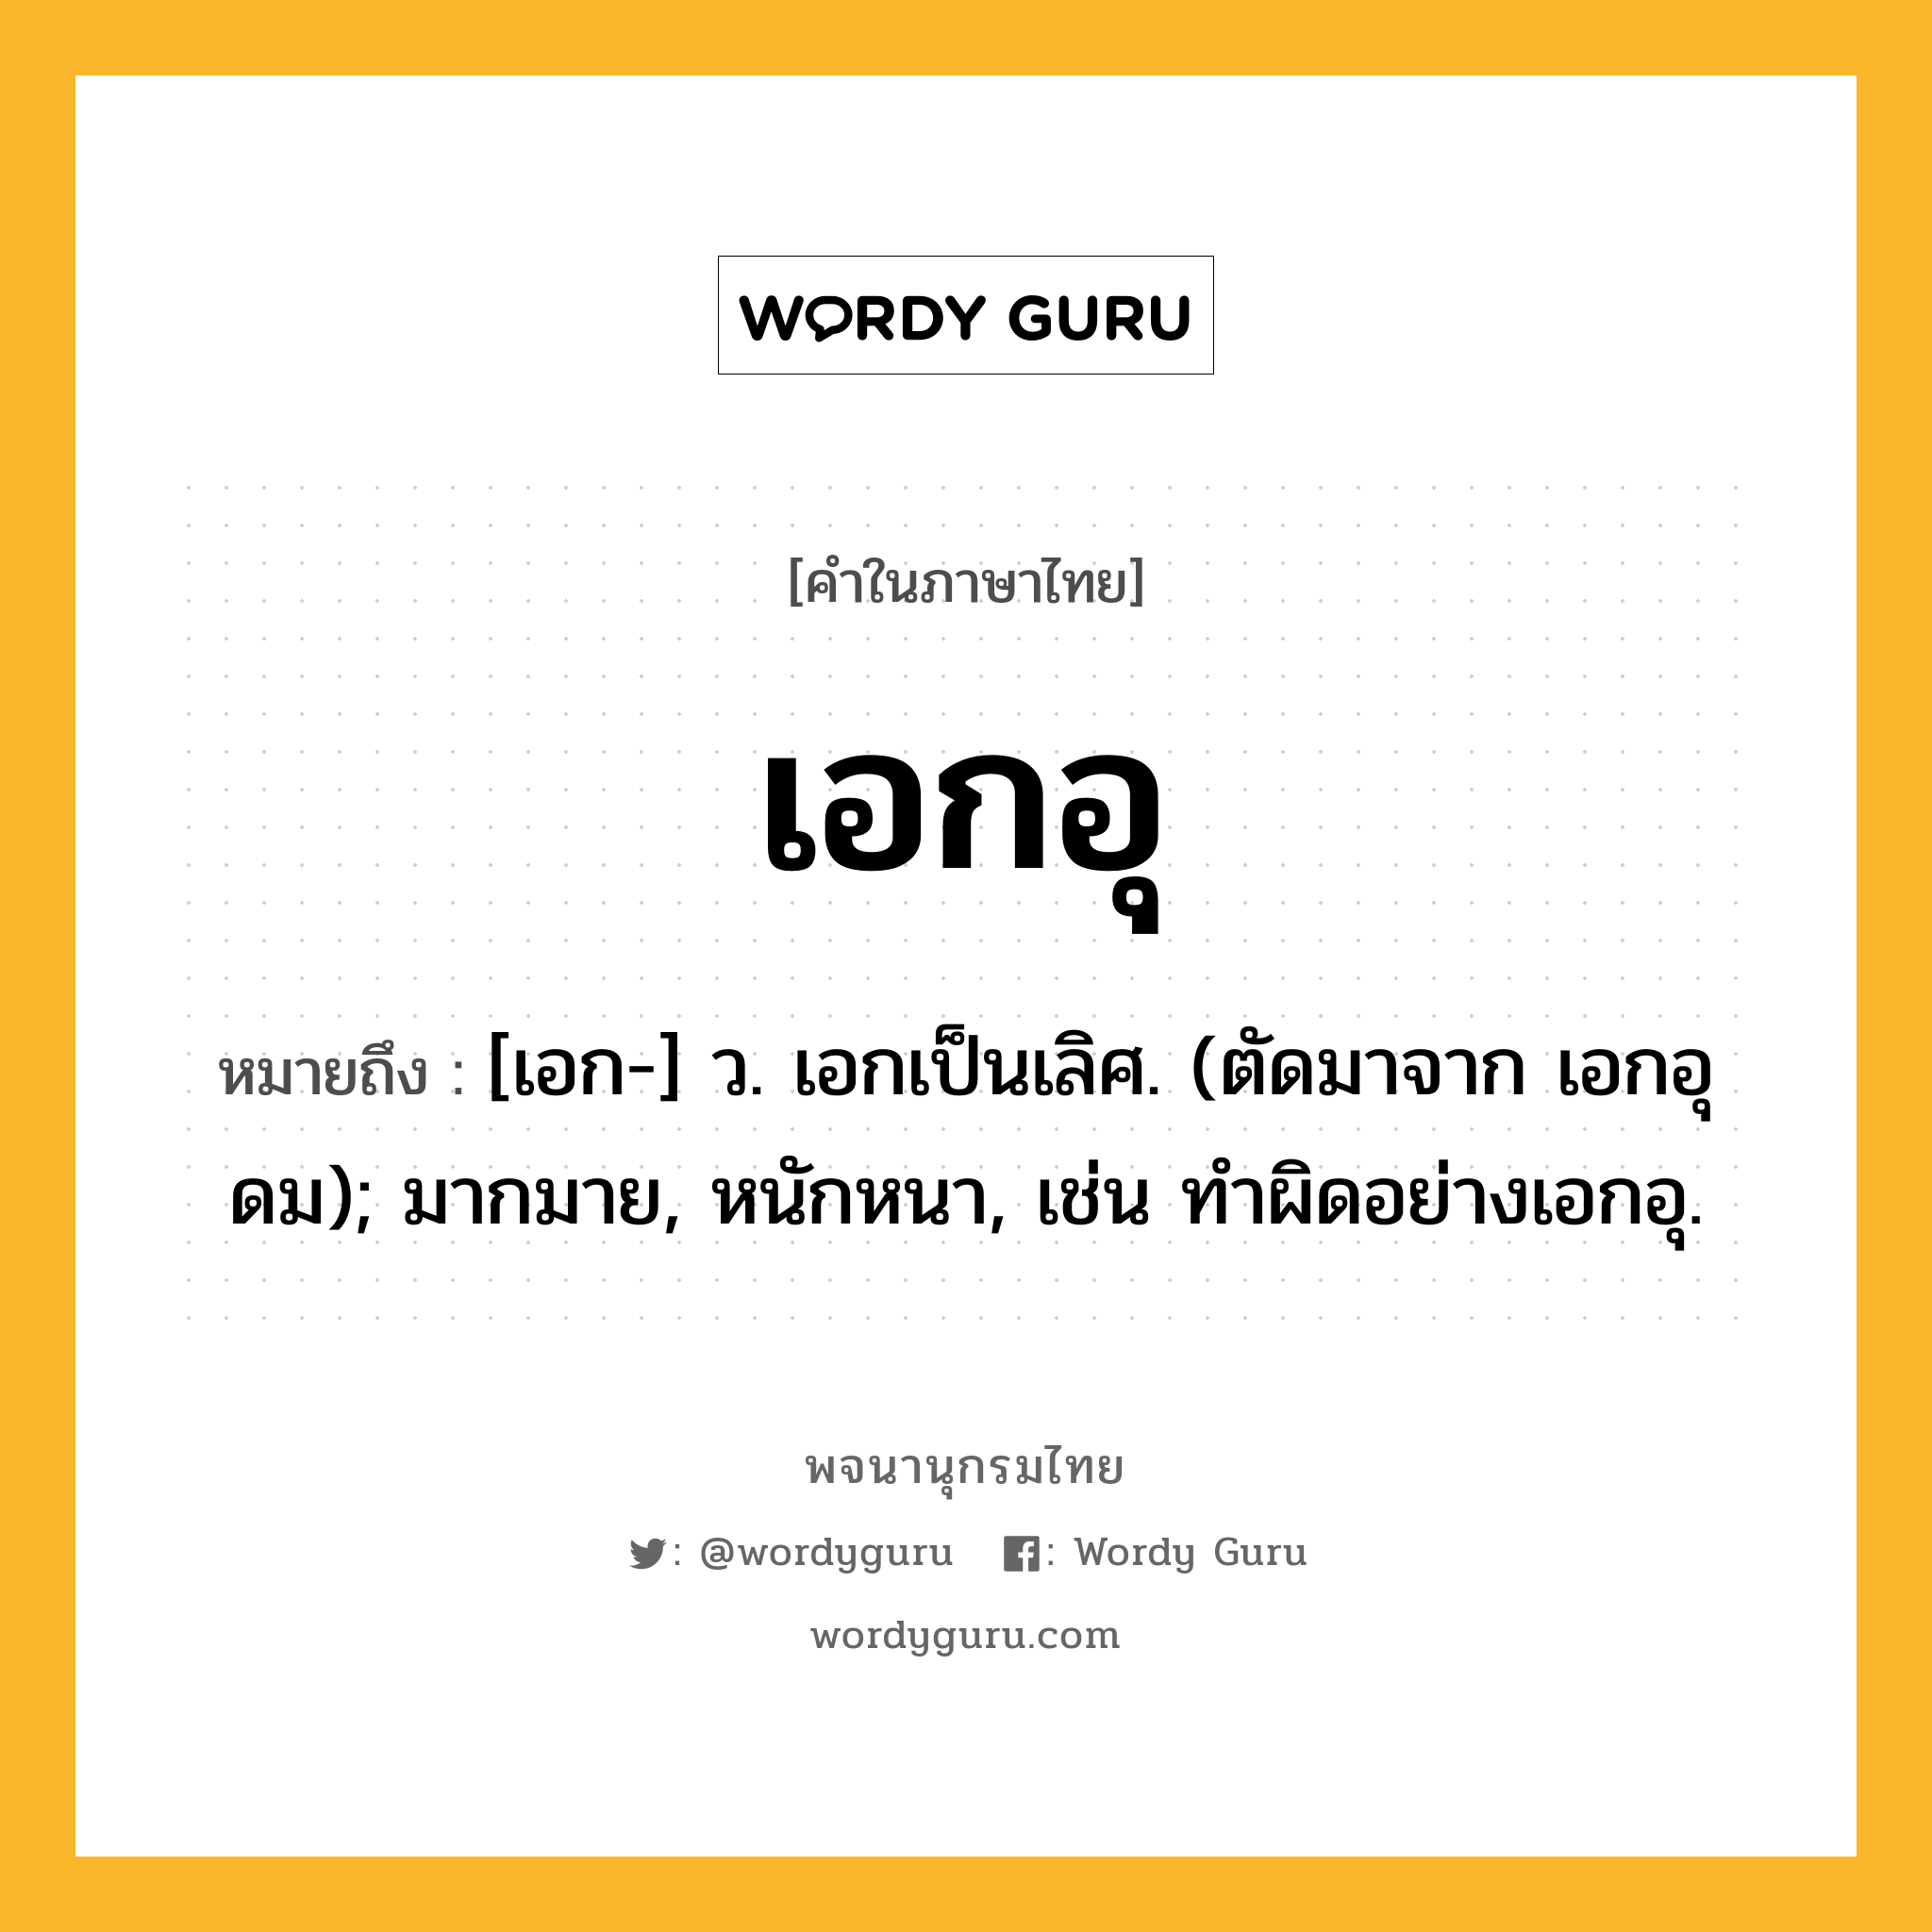 เอกอุ ความหมาย หมายถึงอะไร?, คำในภาษาไทย เอกอุ หมายถึง [เอก-] ว. เอกเป็นเลิศ. (ตัดมาจาก เอกอุดม); มากมาย, หนักหนา, เช่น ทำผิดอย่างเอกอุ.